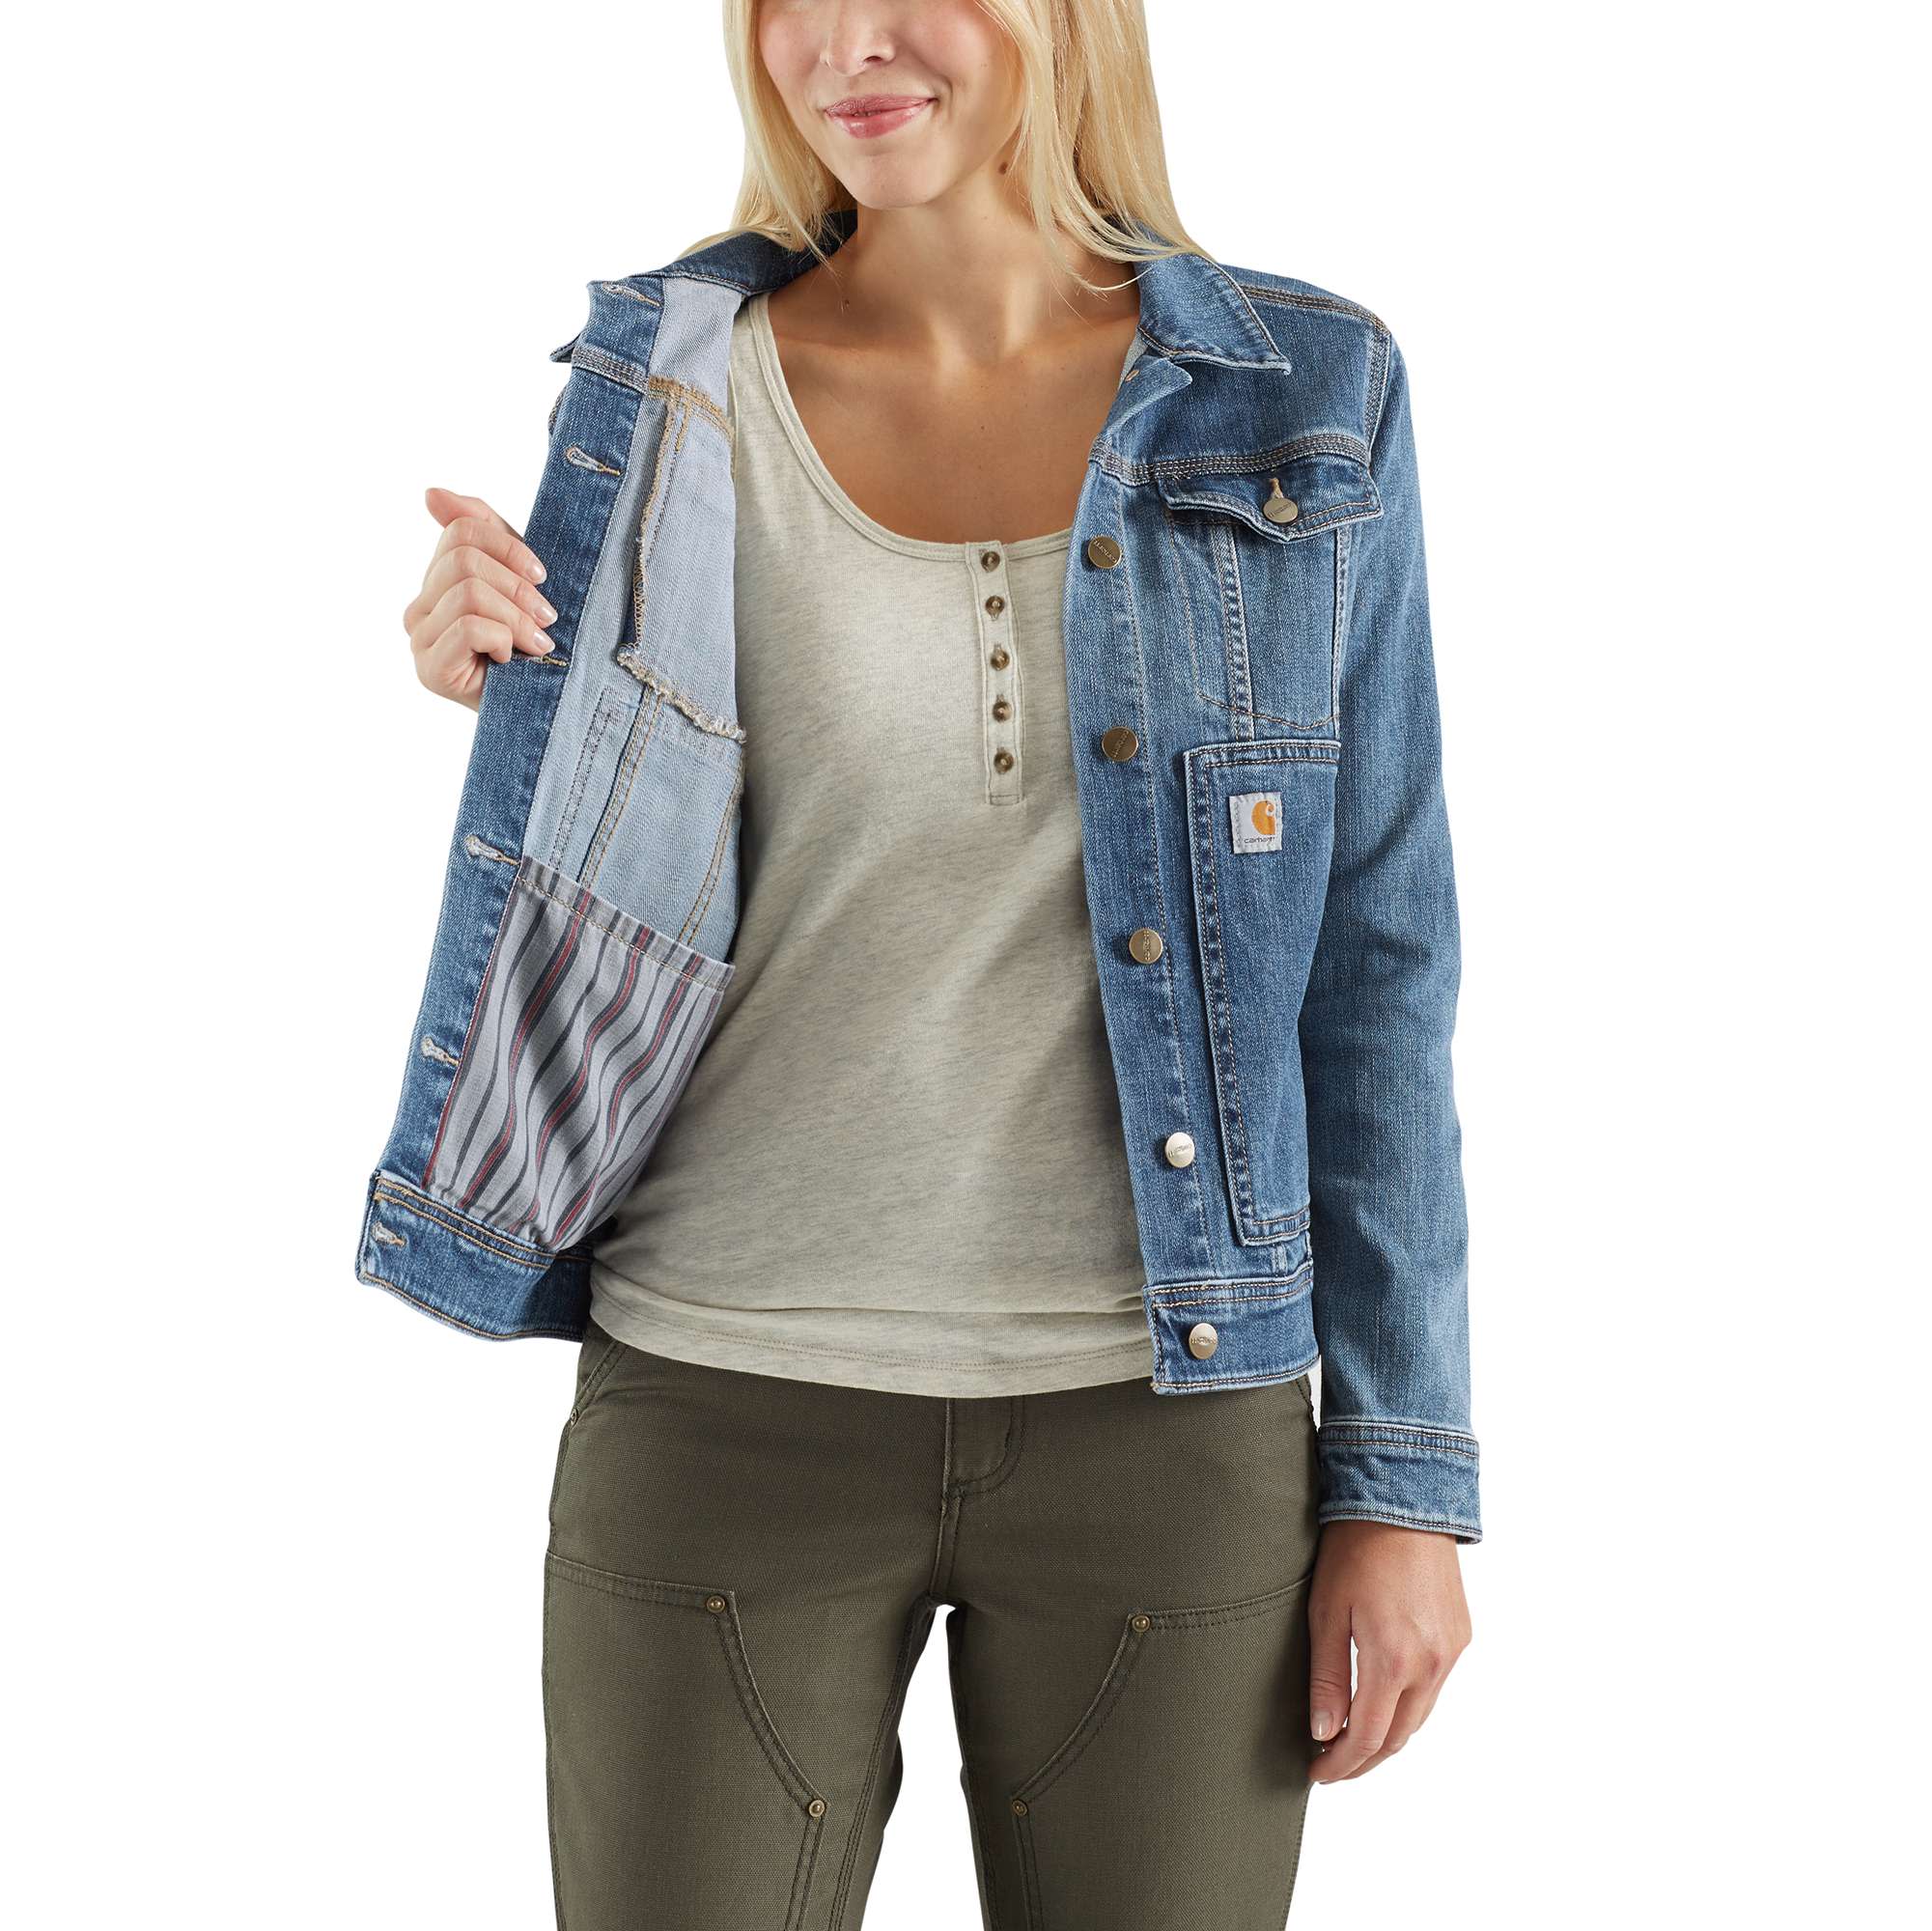 Buy jiejiegao Women Denim Jacket Boyfriend Long Sleeve Loose Jean Jacket  Coats Dark Blue L at Amazon.in